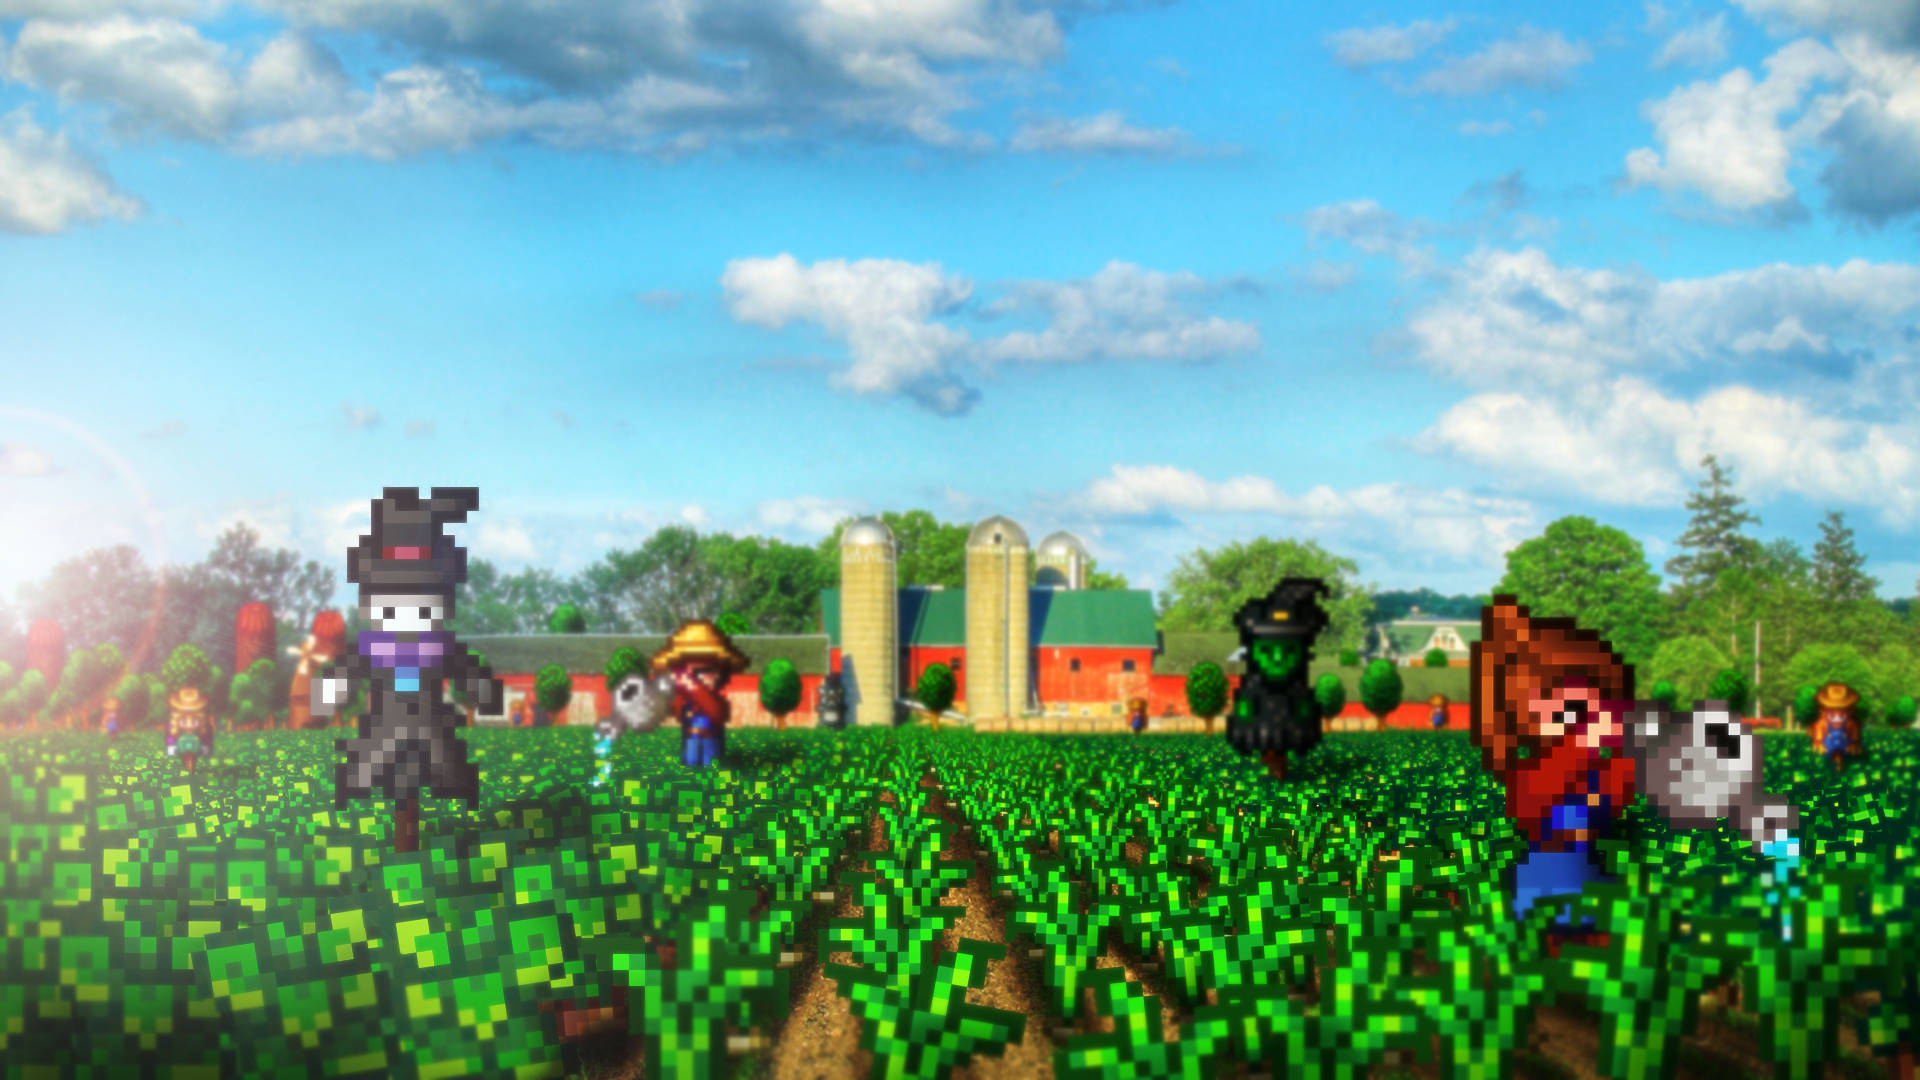 Stardew Valley Pixel Farm Landscape Wallpaper